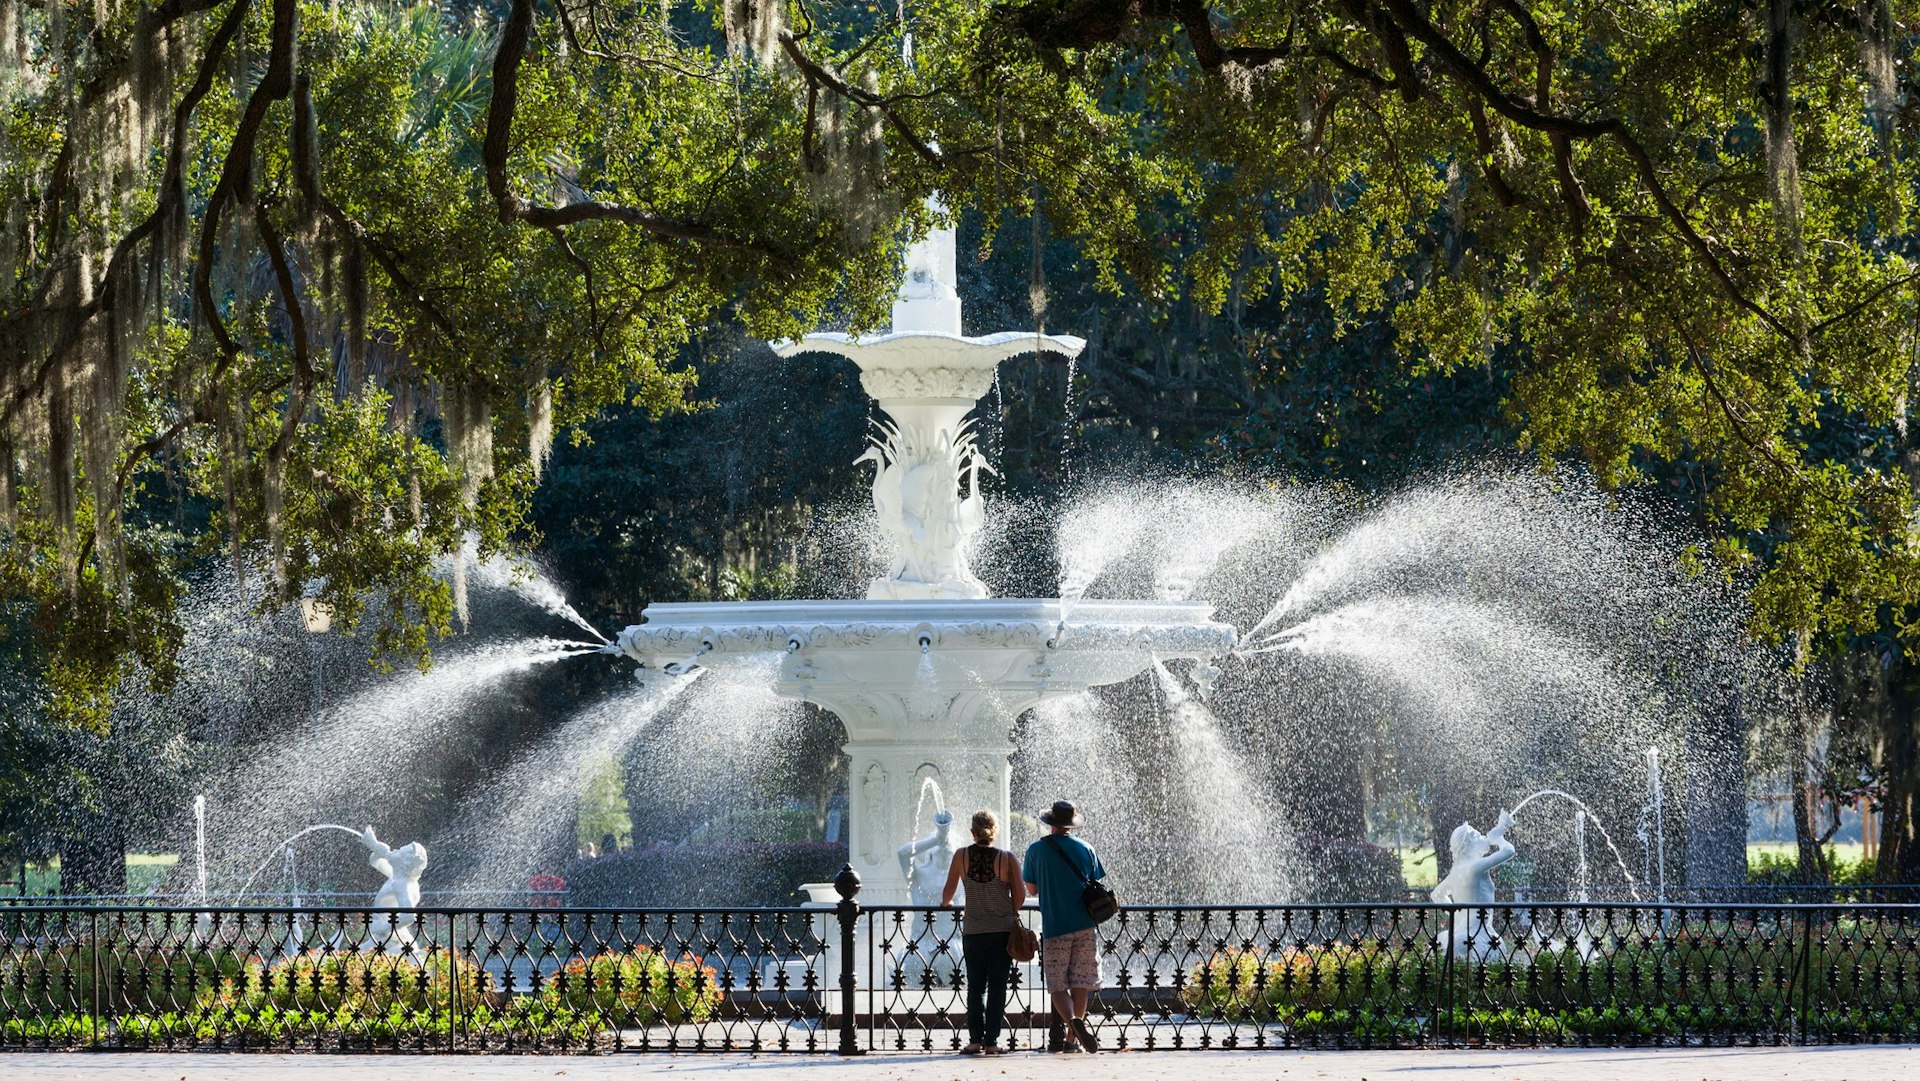  Georgia, Savannah, fountain in Forsyth Park